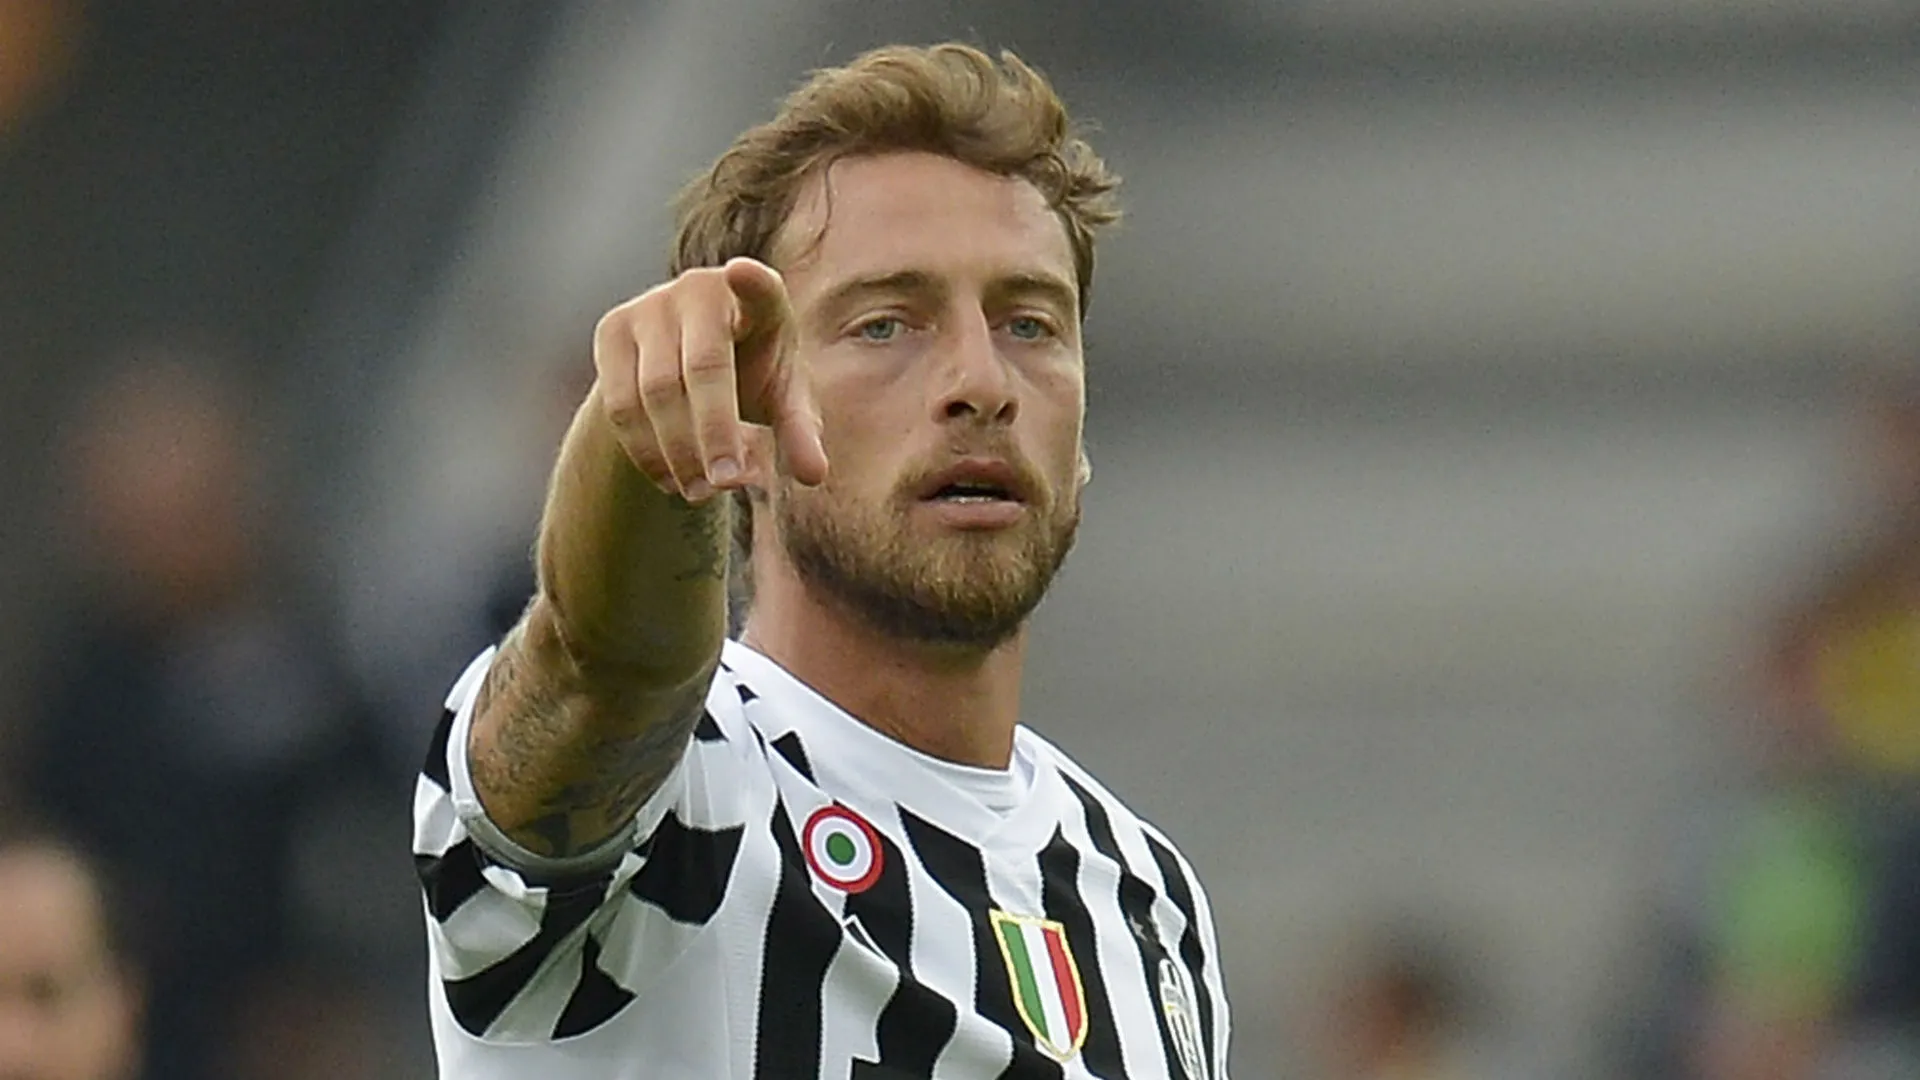 Marchisio e il 'terremoto' Conte: 'Quella frase colpì nell'orgoglio tutti, da quel momento...'